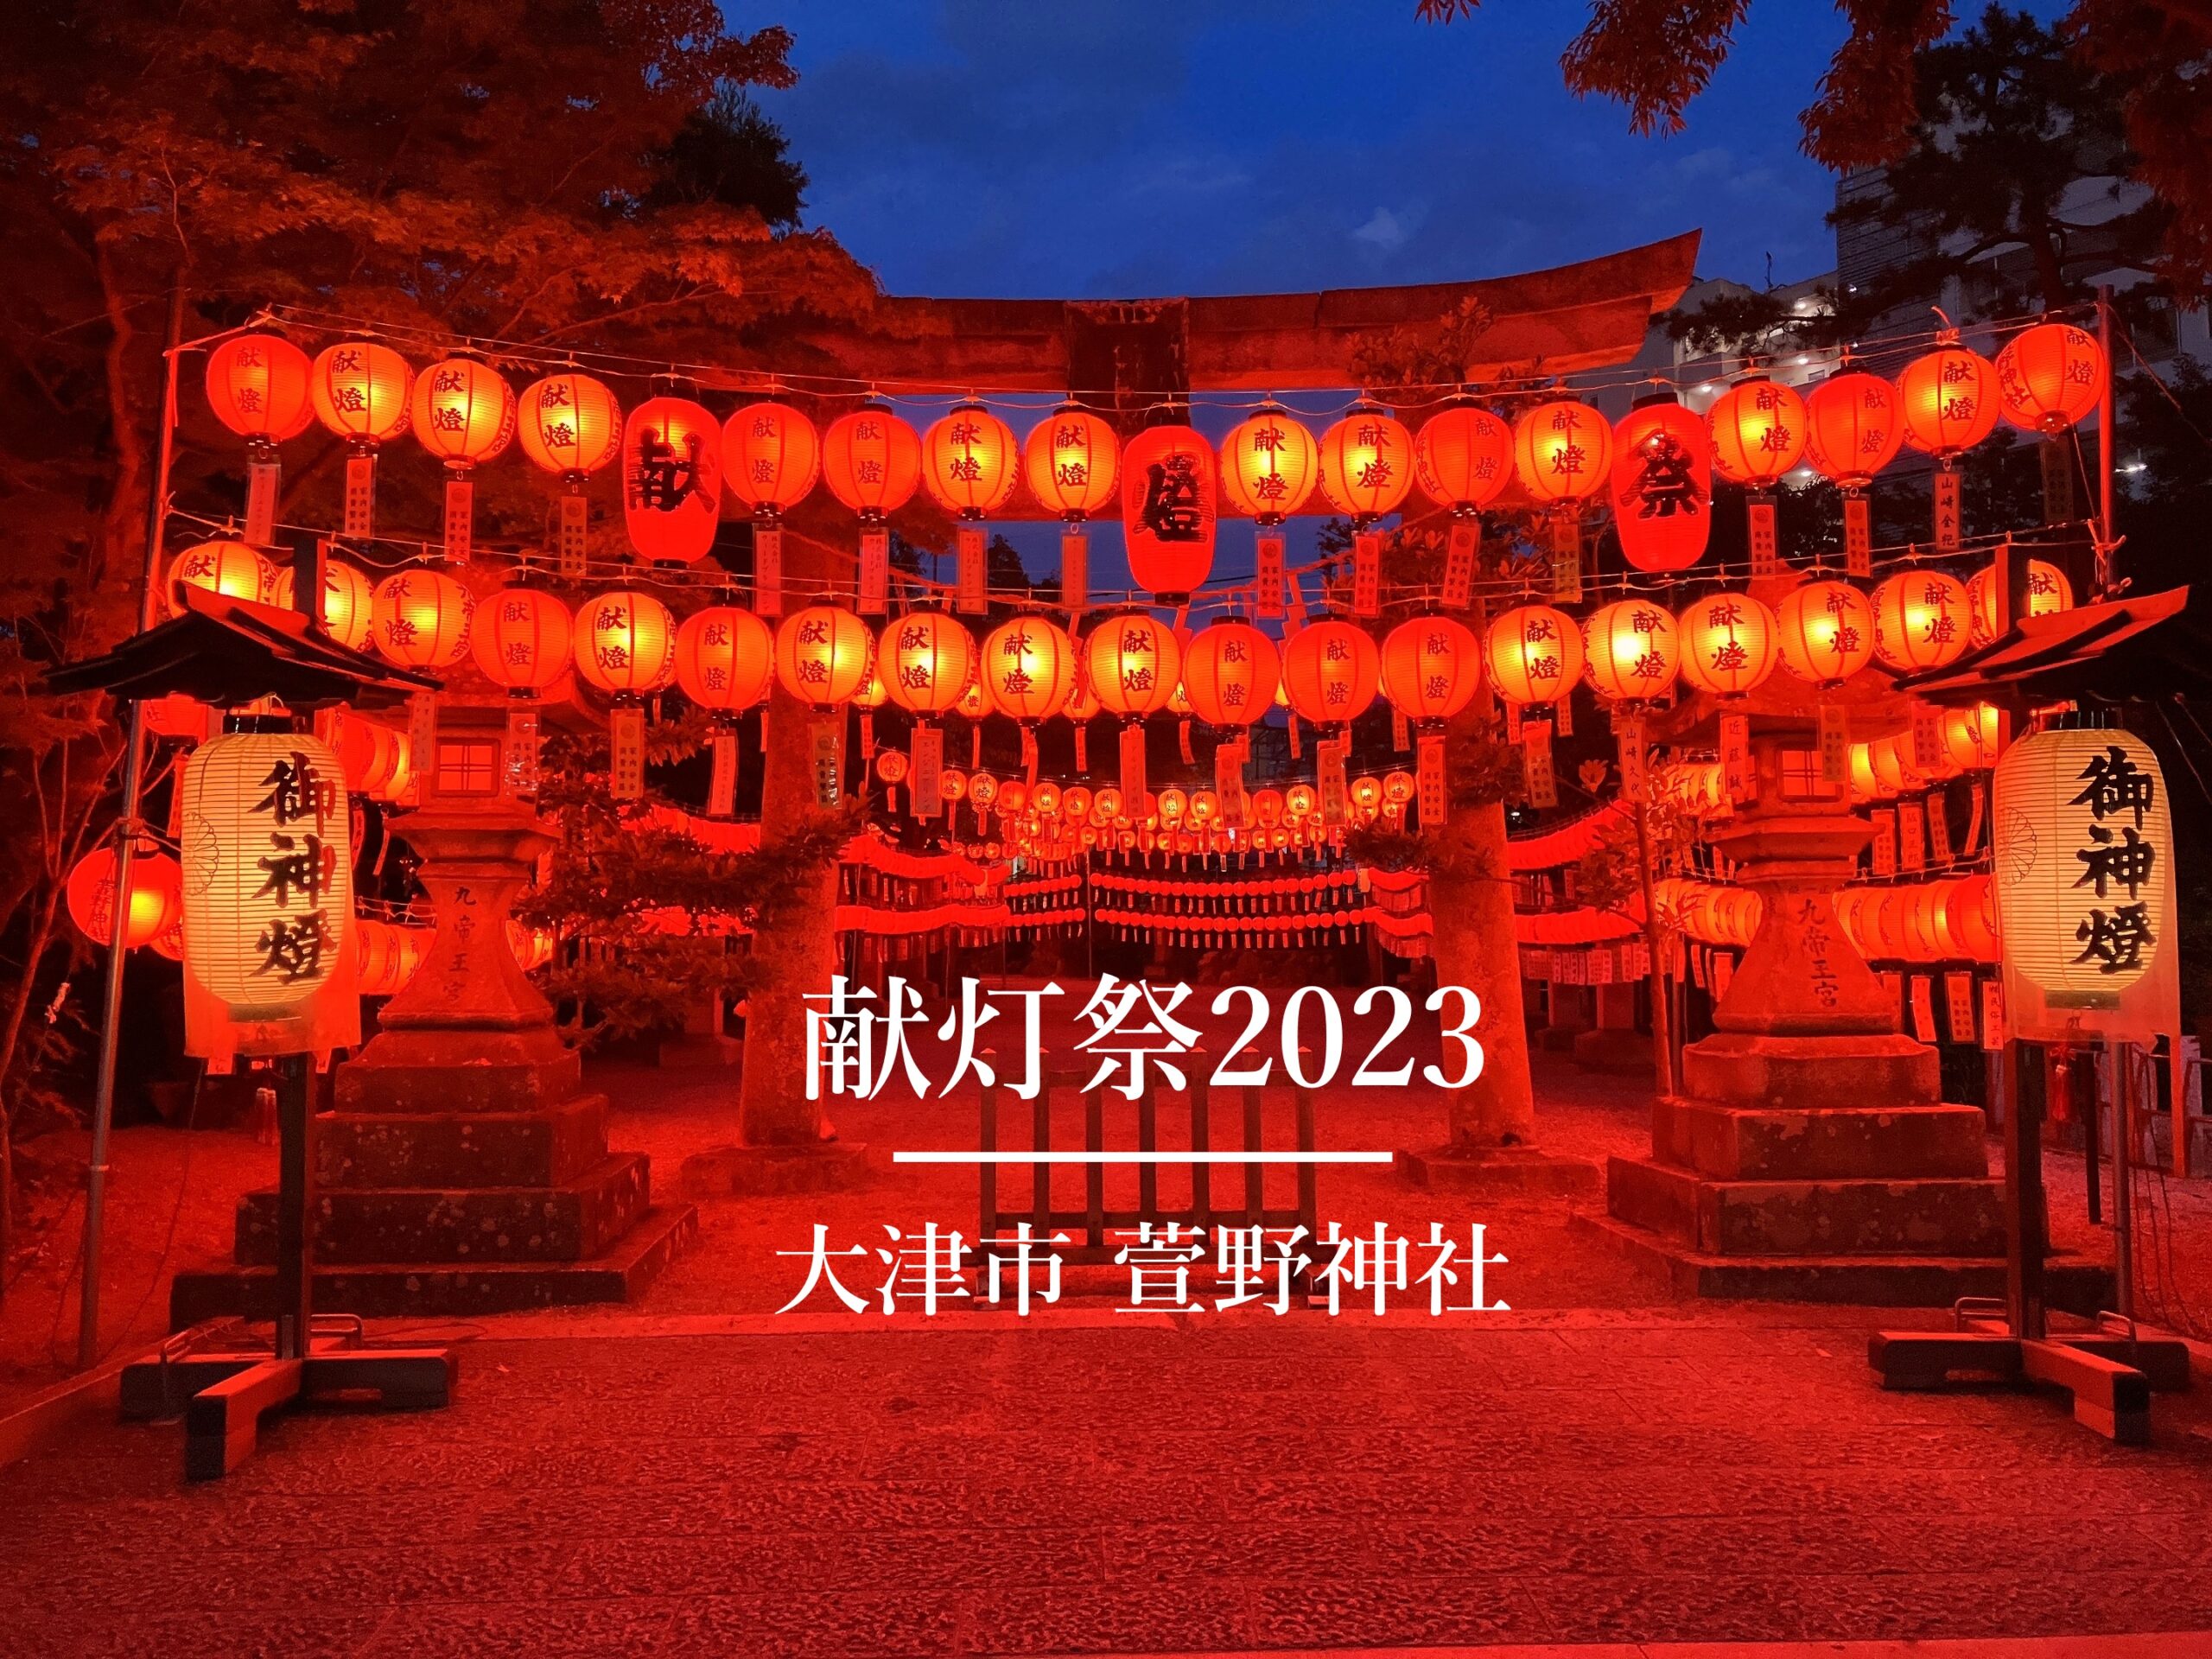 萱野神社 献灯祭2023